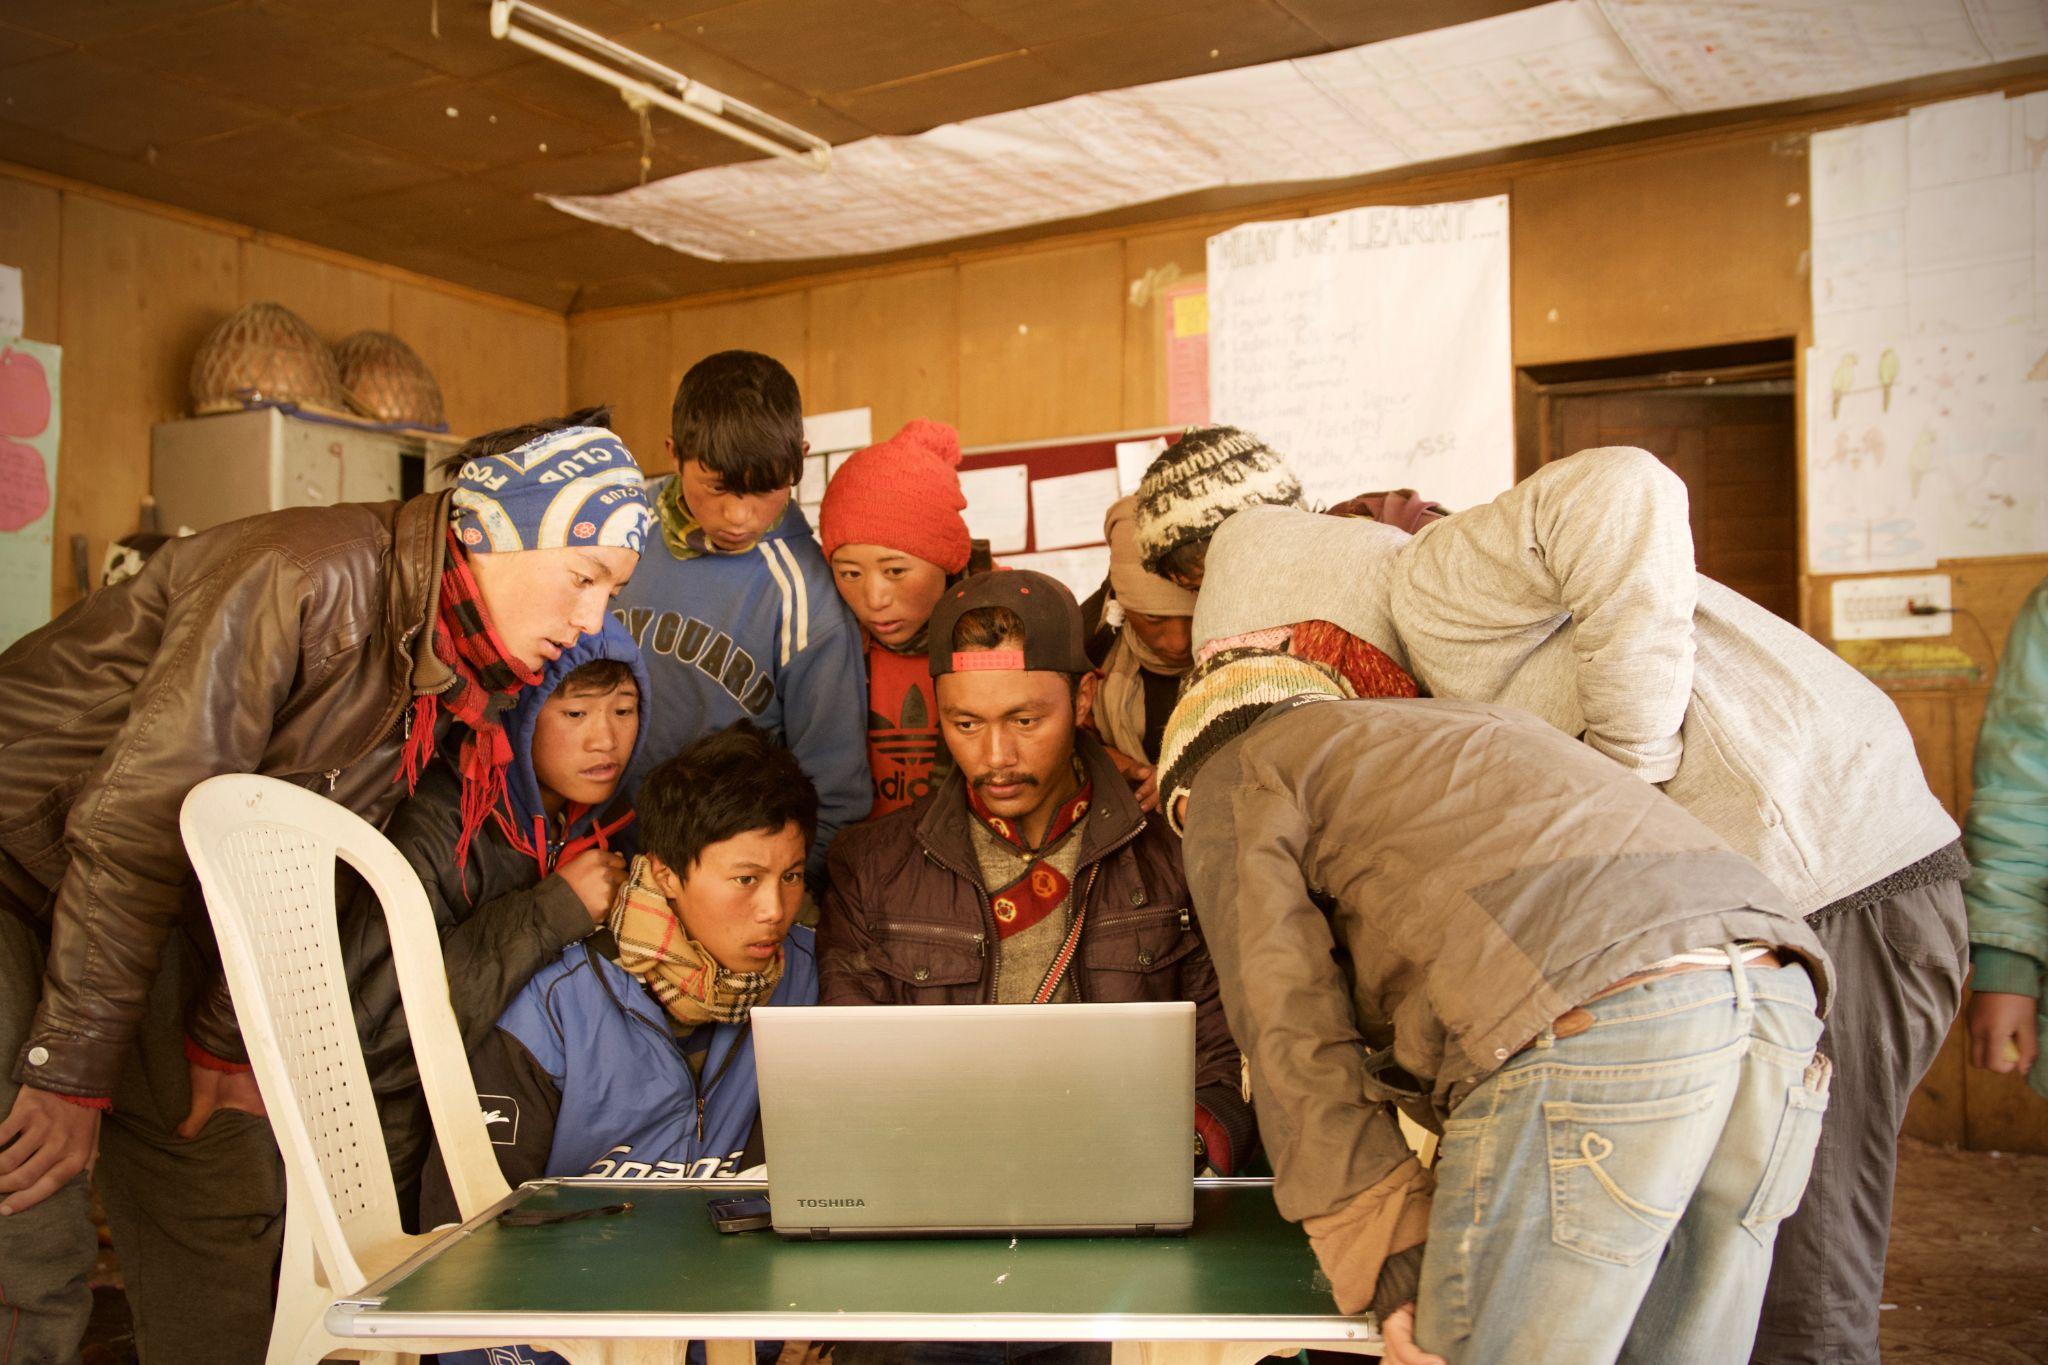 أشخاص يجتمعون حول كمبيوتر محمول يقفون على طاولة بسيطة مع كرسي بلاستيكي على اليسار تبدو الخلفية وكأنها مدرسة في بلد نامٍ.